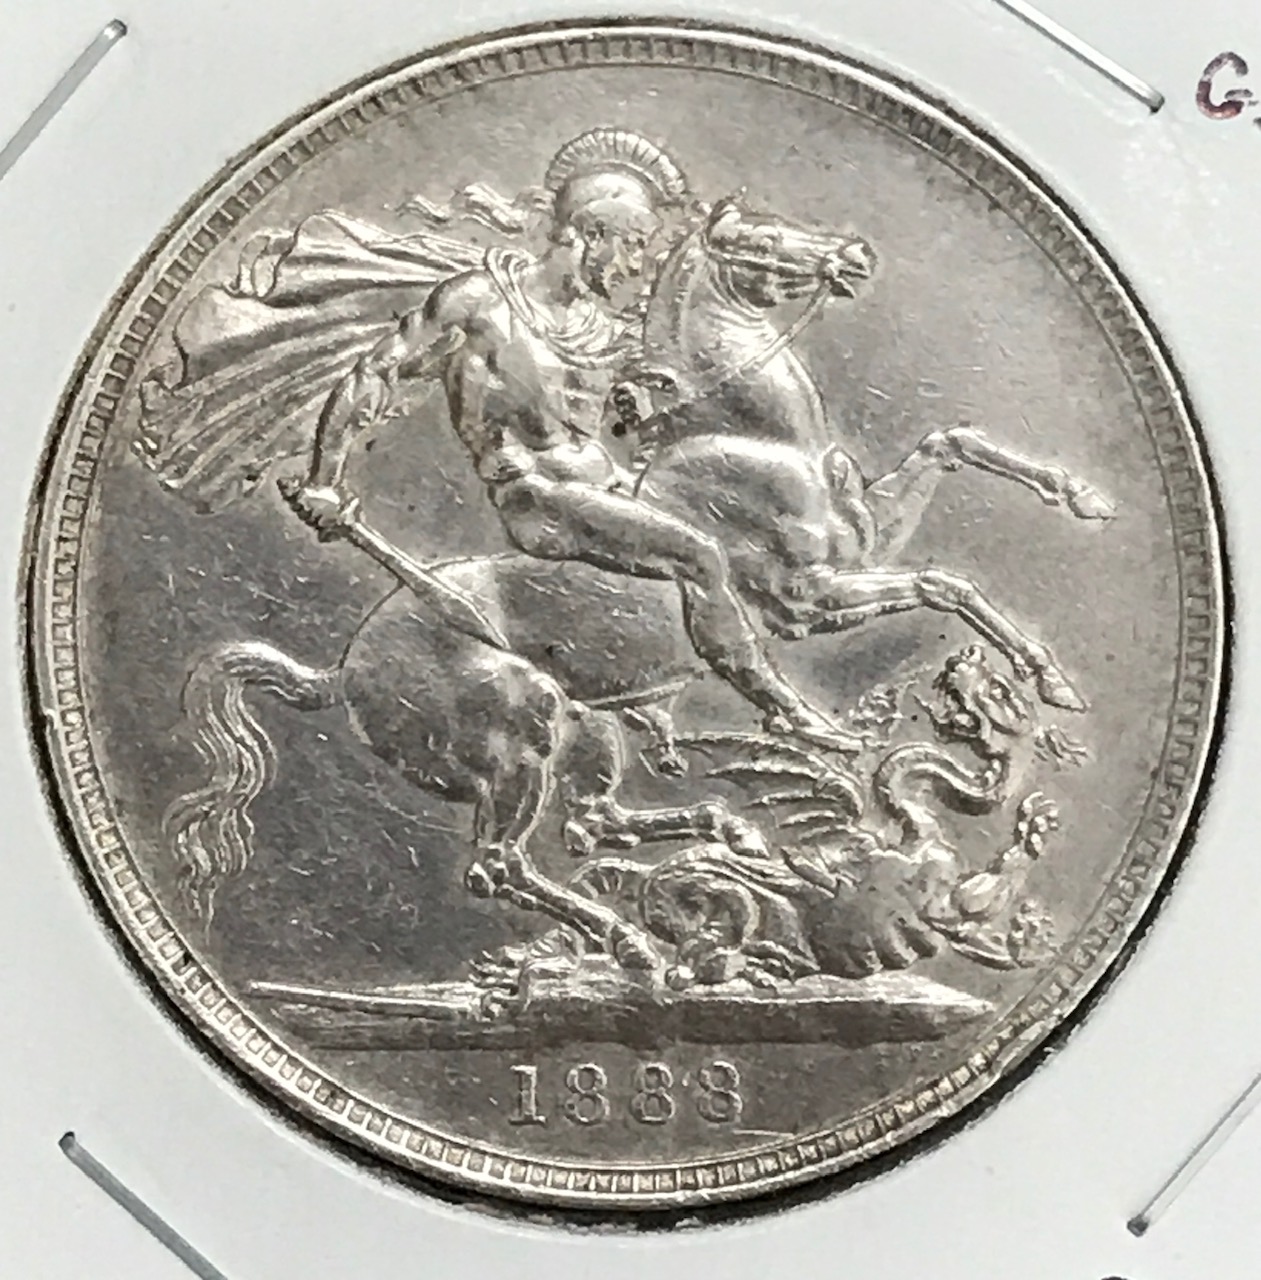 coins_20200903 (1).jpg